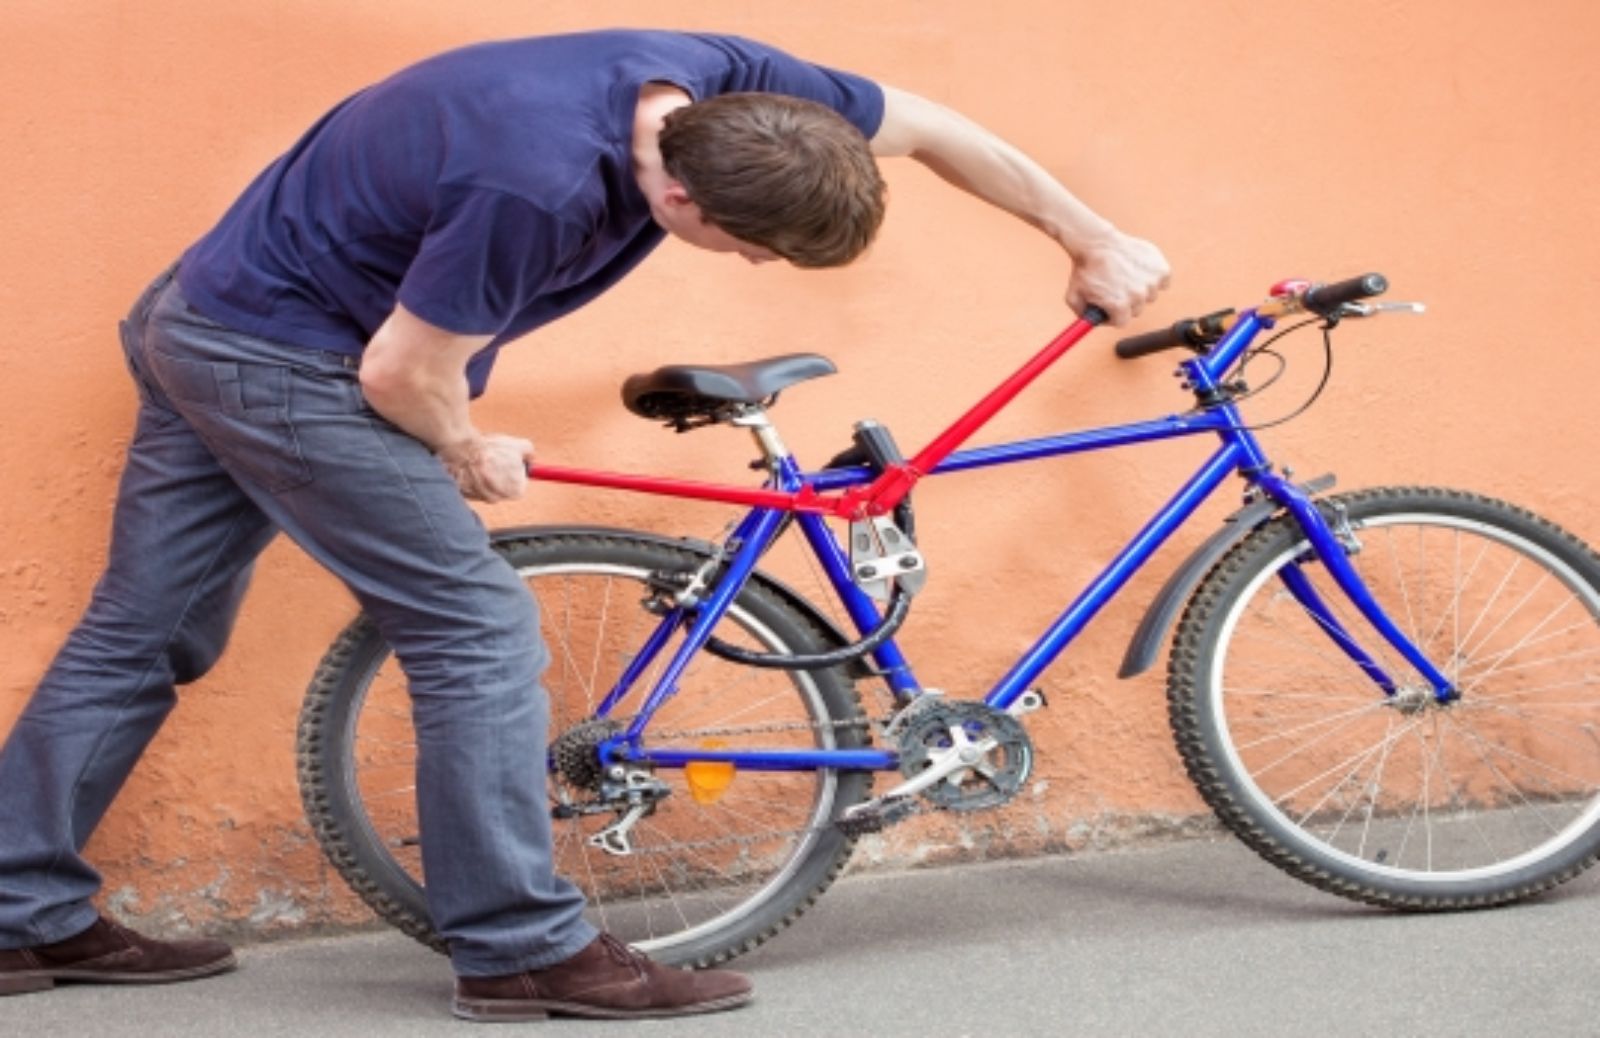 Come non farsi rubare la bici